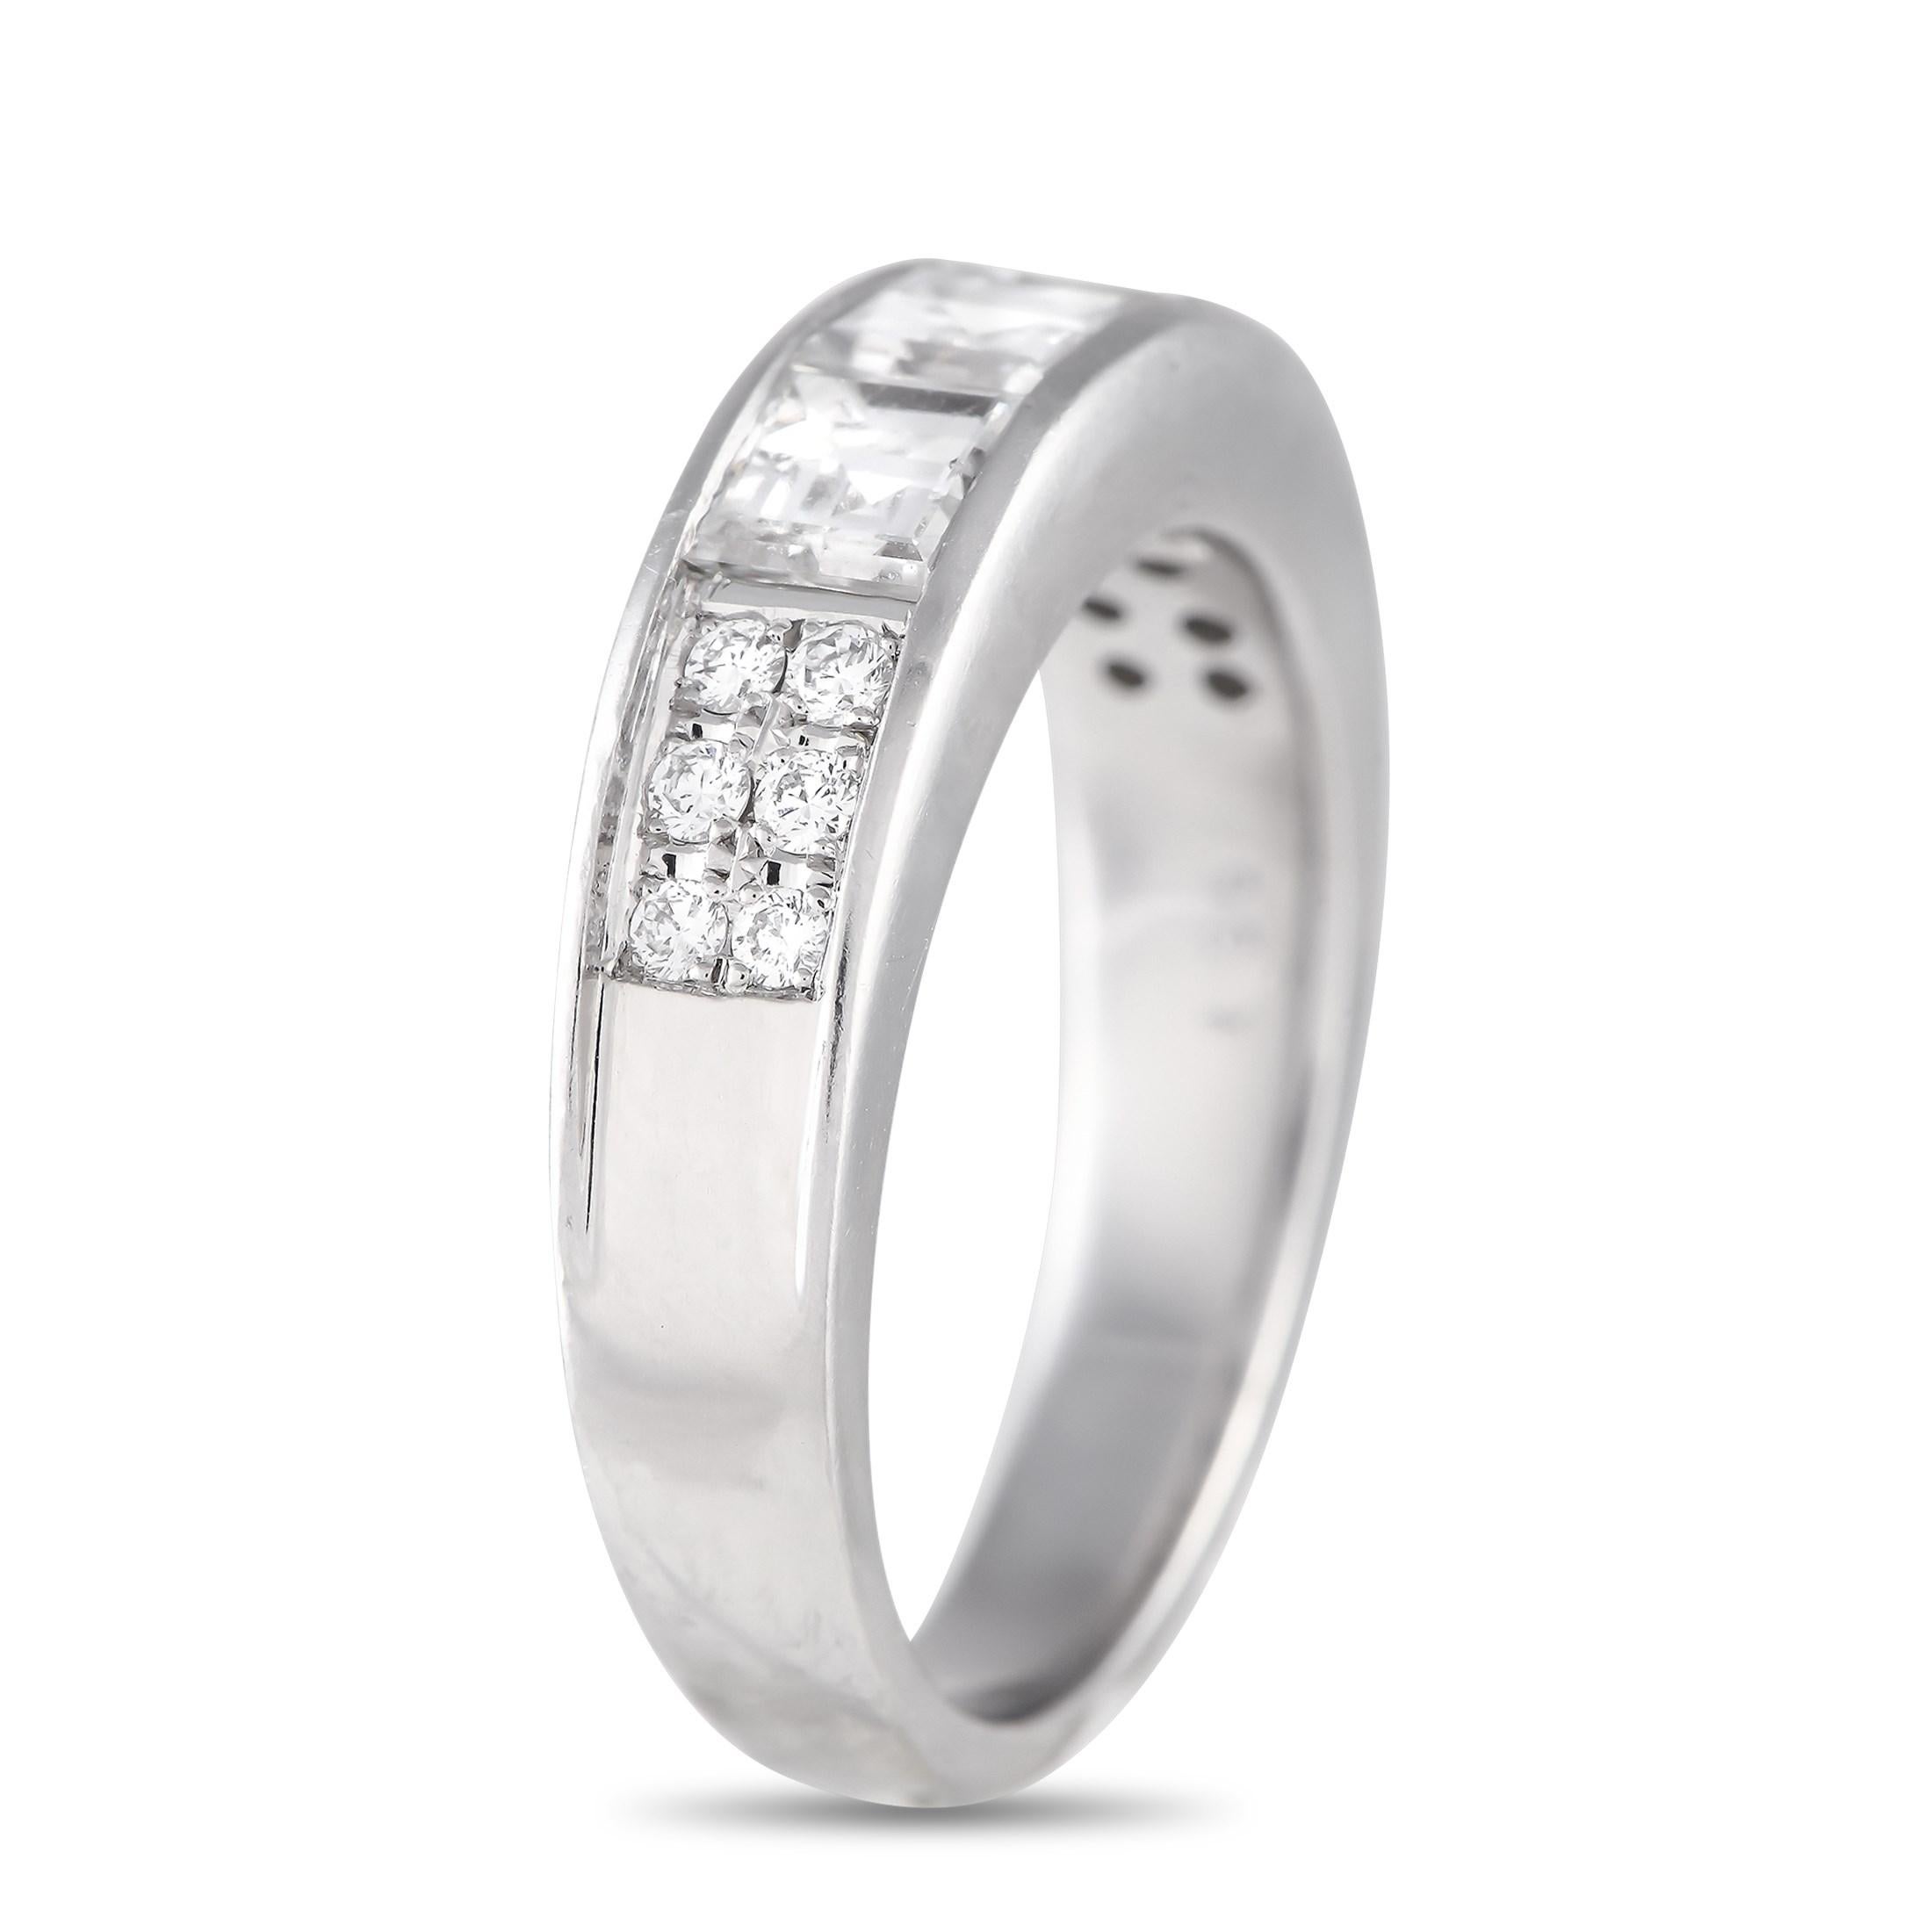 Cet anneau luxueux est simple, élégant et discret. Le bracelet minimaliste en platine mesure 3 mm de large et dispose d'une hauteur supérieure de 3 mm, ce qui signifie qu'il tiendra toujours confortablement sur la main. Des diamants enchâssés d'un